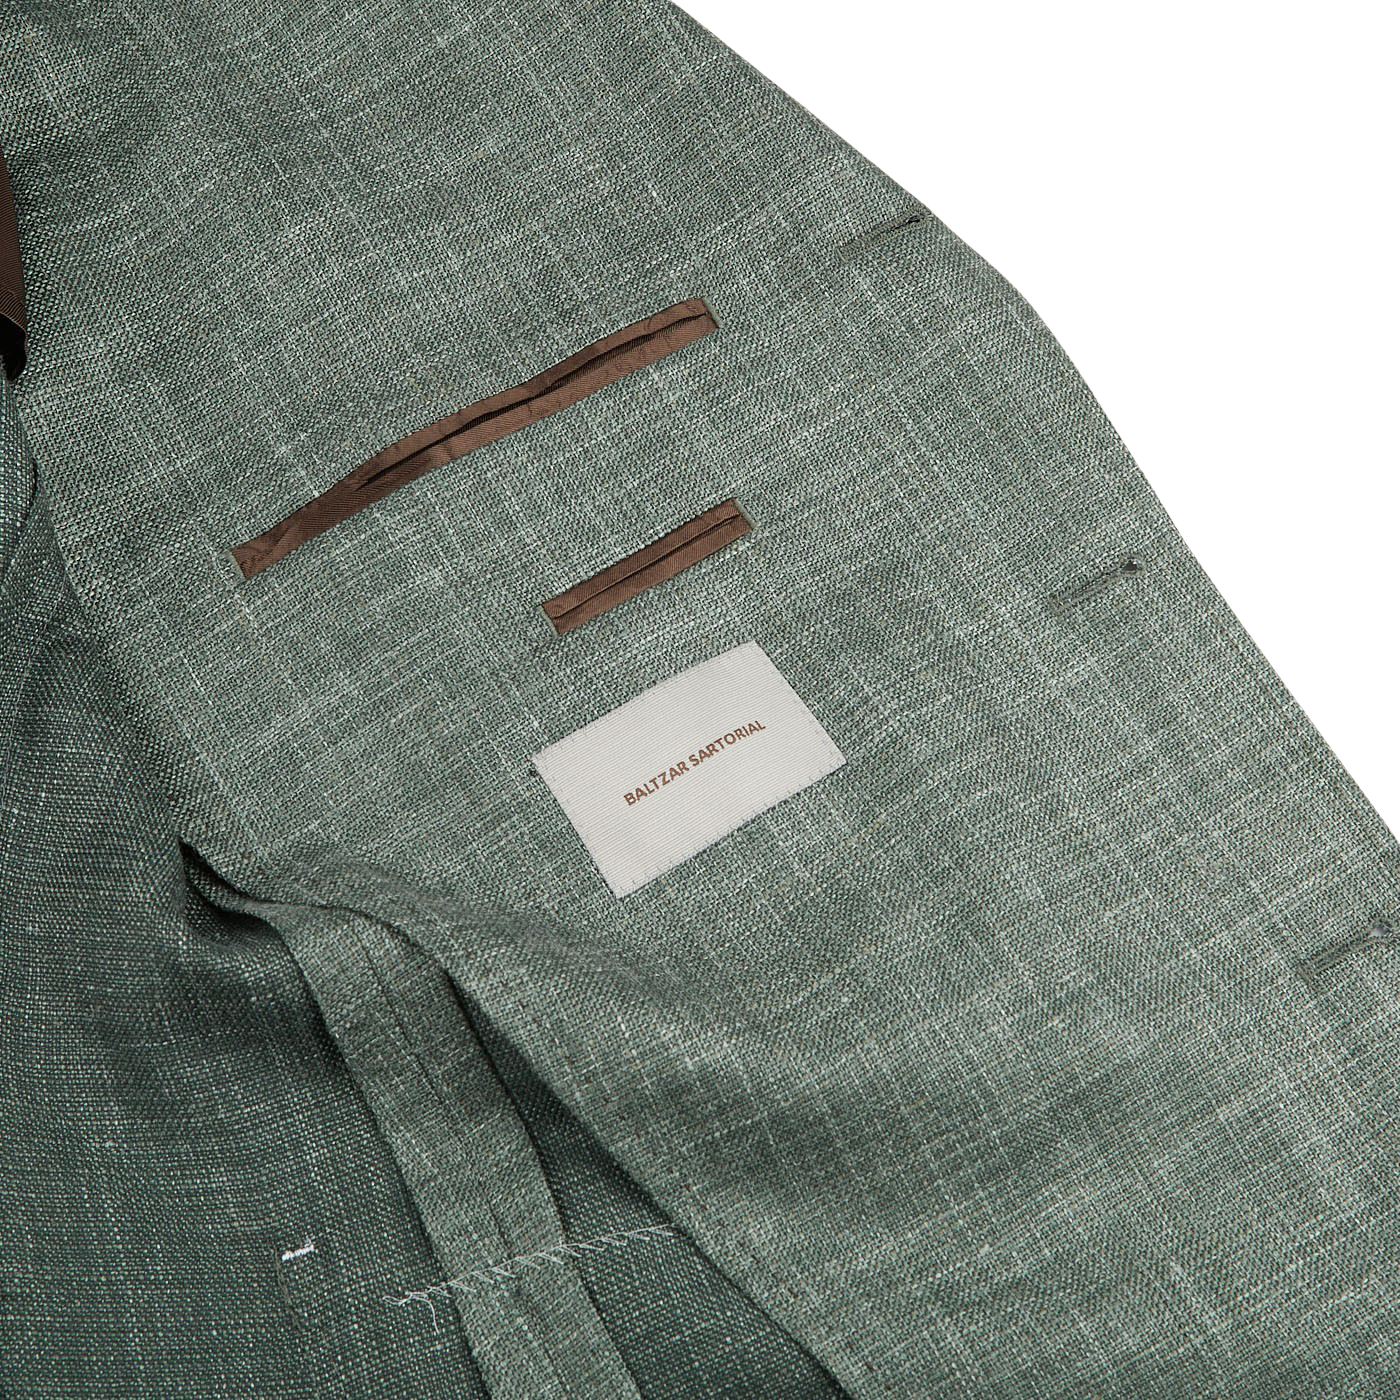 A green Melange Wool Silk Linen Blazer with a brown notch lapel by Baltzar Sartorial.